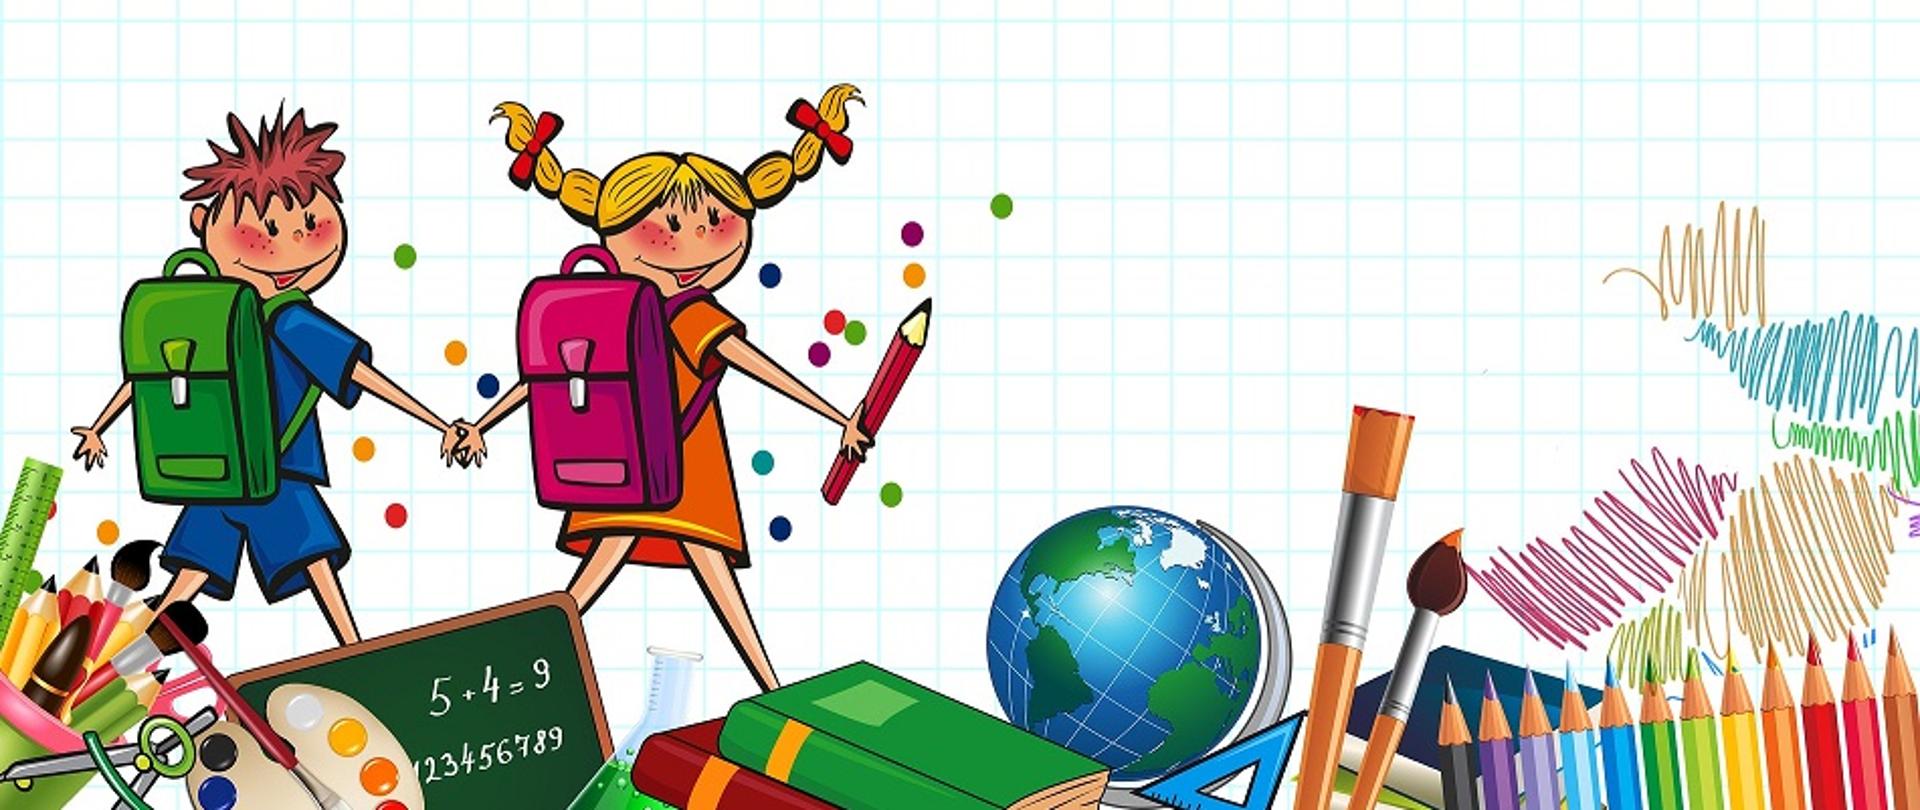 grafika przedstawiająca dwoje uczniów, dziewczynkę i chłopca z tornistrami na plecach, idących za rękę do szkoły. Są na tle kartki w kratkę, a na dole umieszczone są kredki, cyrkiel, tablica, książki, pędzle, globus 